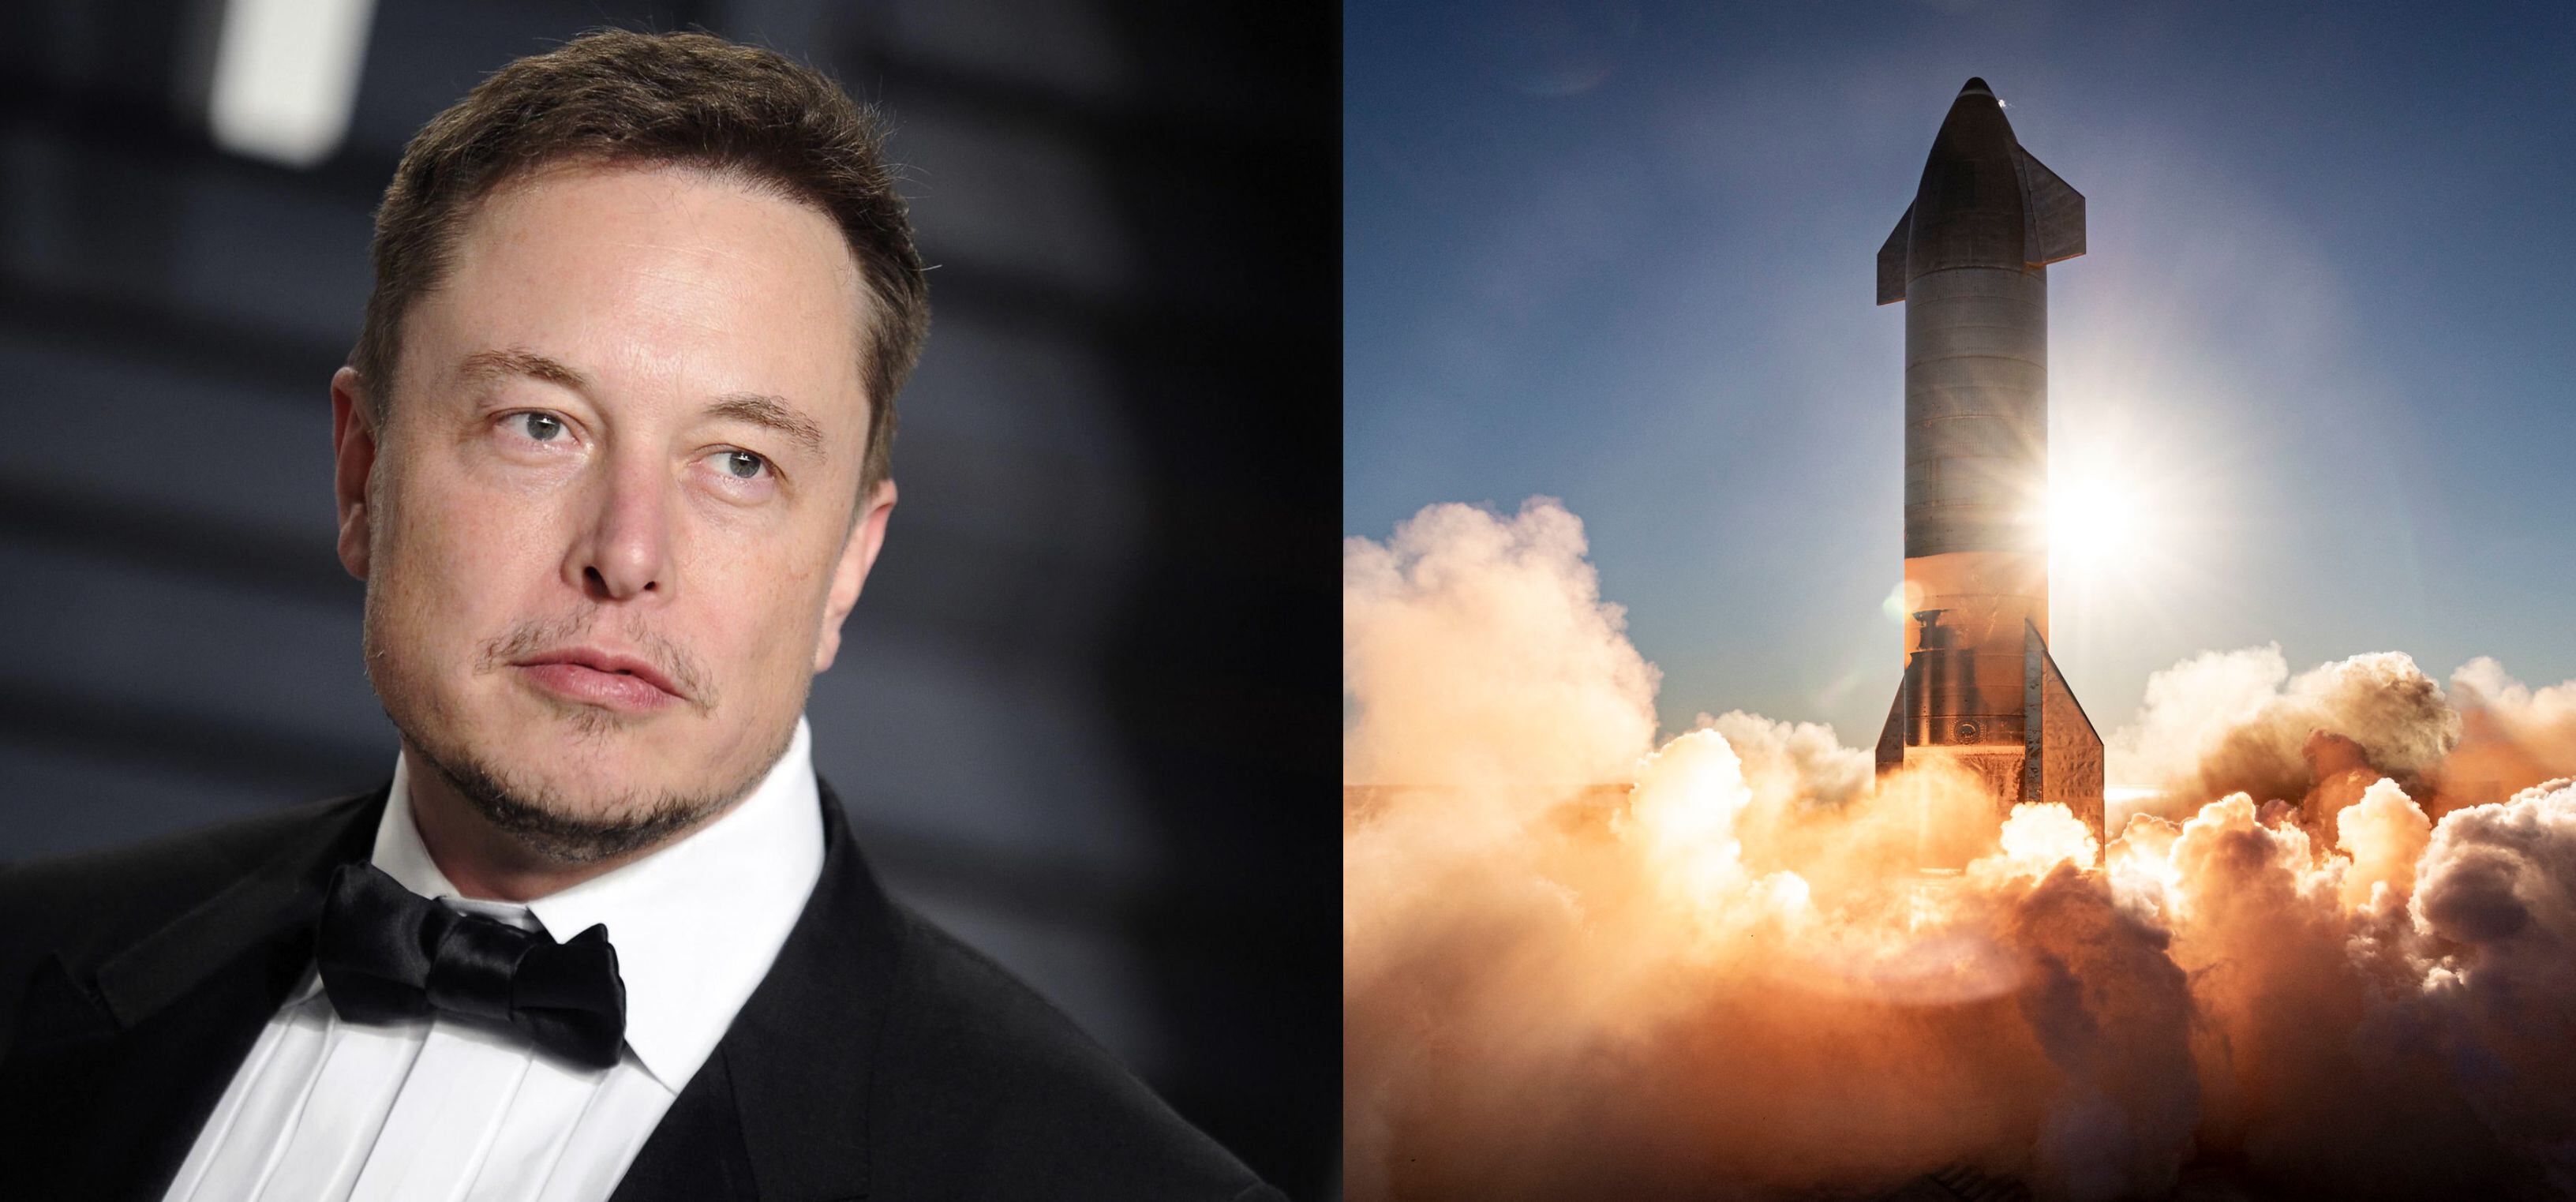 Izquierda: Elon Musk, CEO de SpaceX. Derecha: El prototipo del cohete número 8 de serie Starship de SpaceX, lanzado el 8 de diciembre de 2020 desde una plataforma en Boca Chica, Texas.